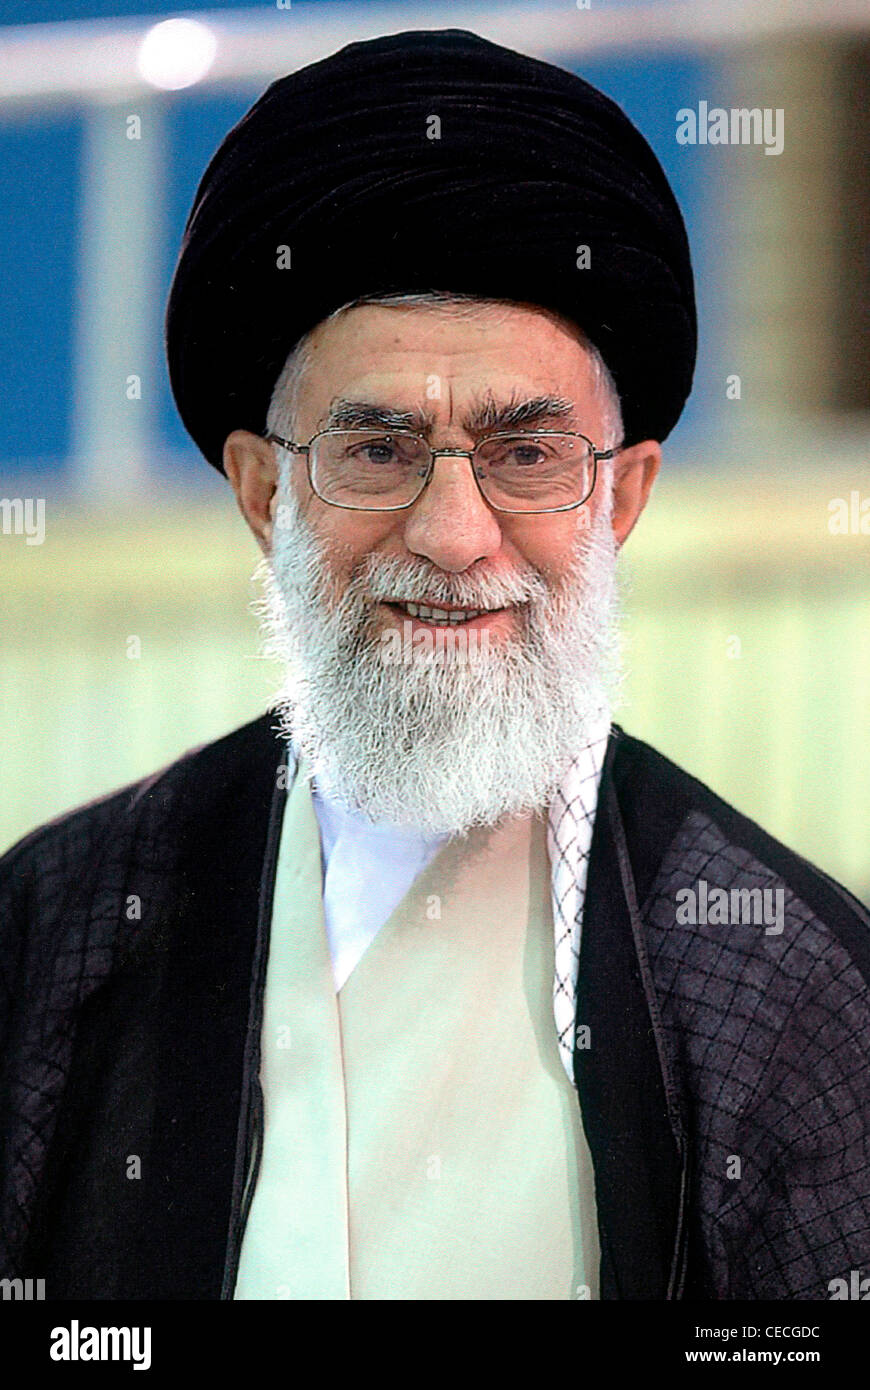 ayatollah-seyyed-ali-khamenei-17071939-portrait-of-the-religion-leader-CECGDC.jpg